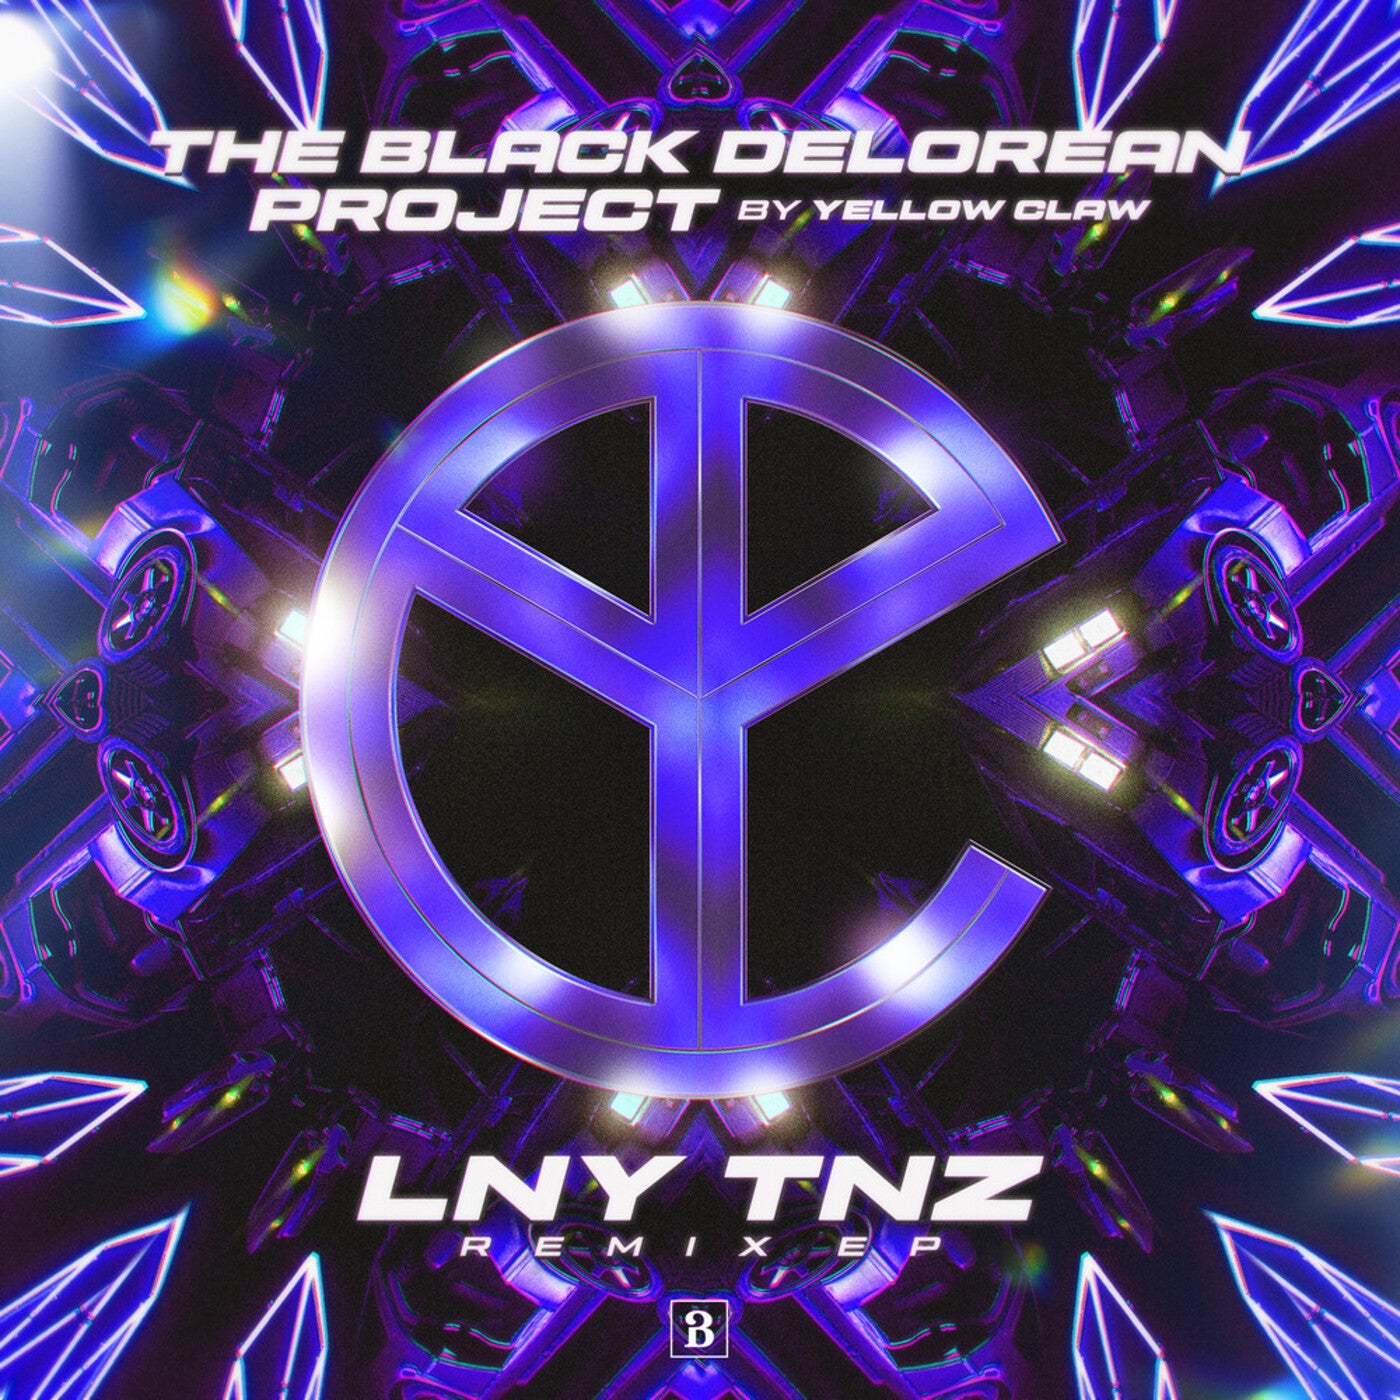 The Black Delorean Project (LNY TNZ Remixes)